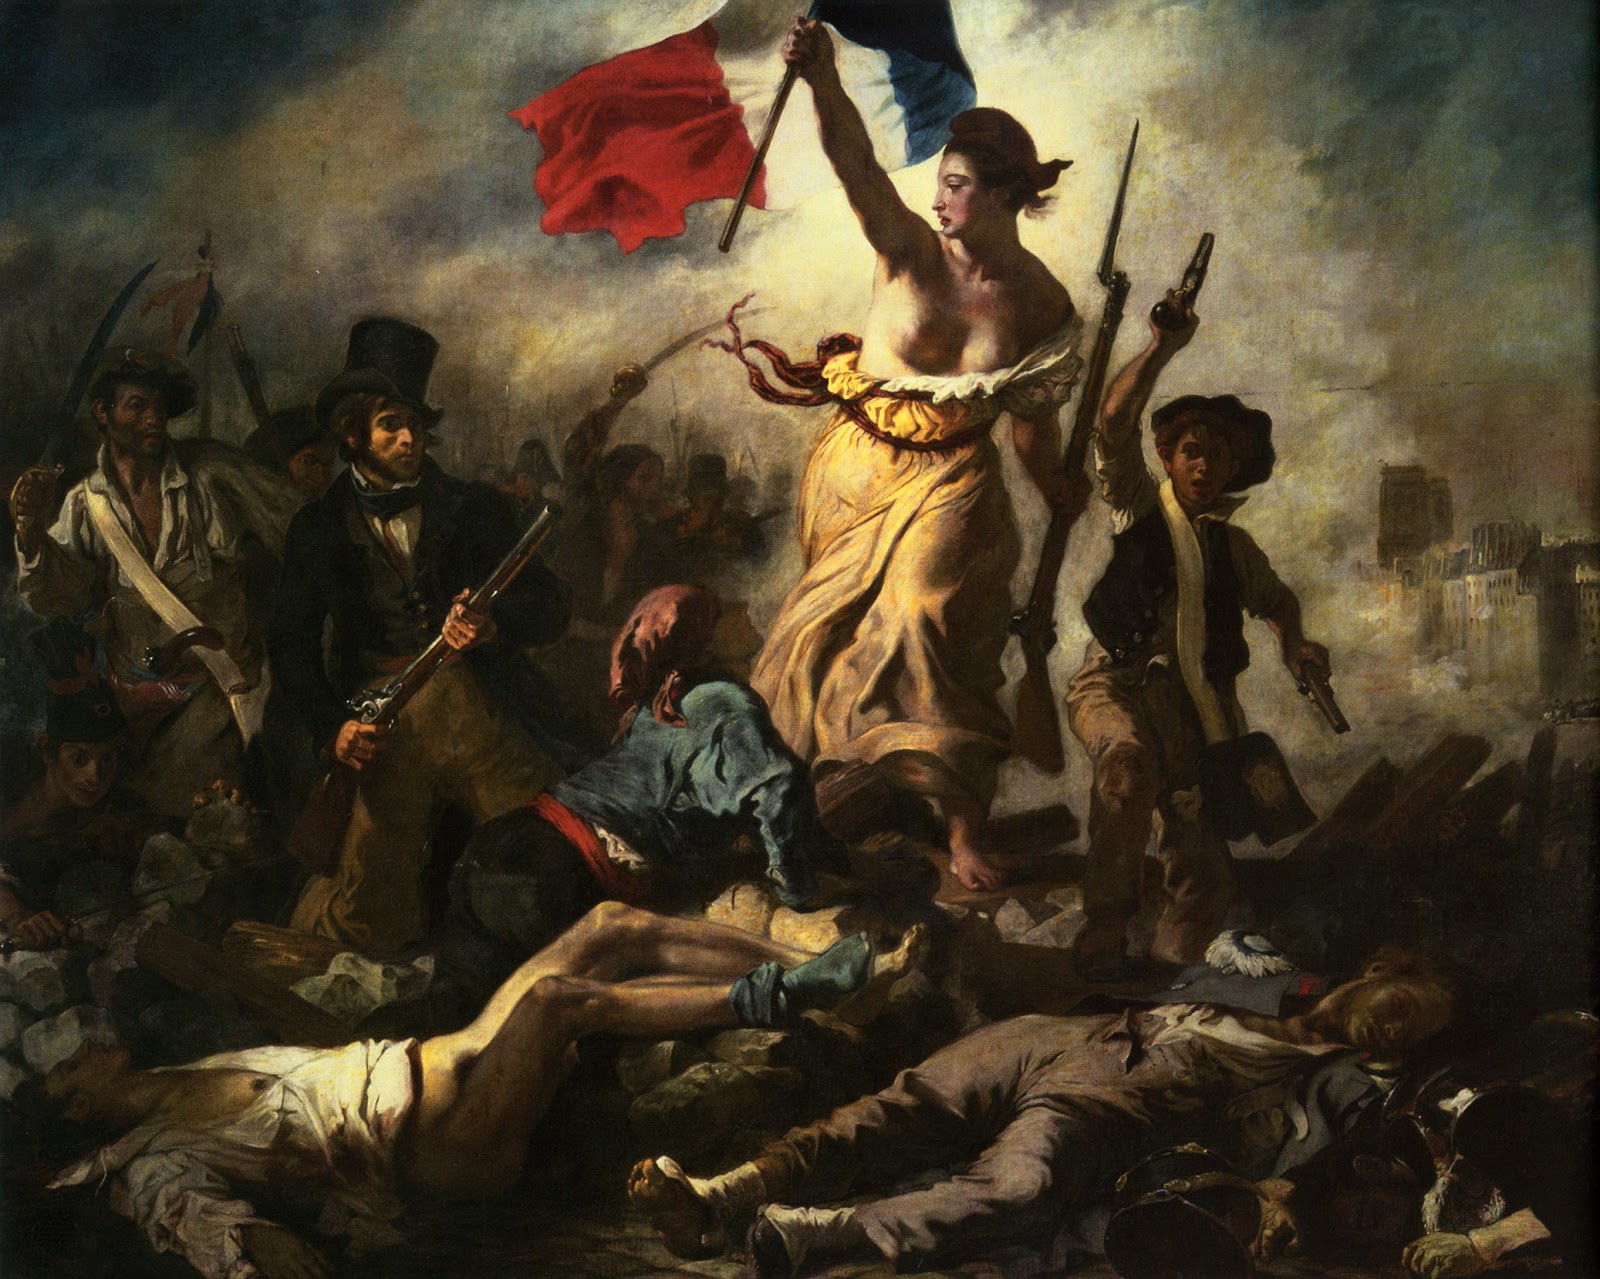 Eugene+Delacroix-1798-1863 (139).jpg